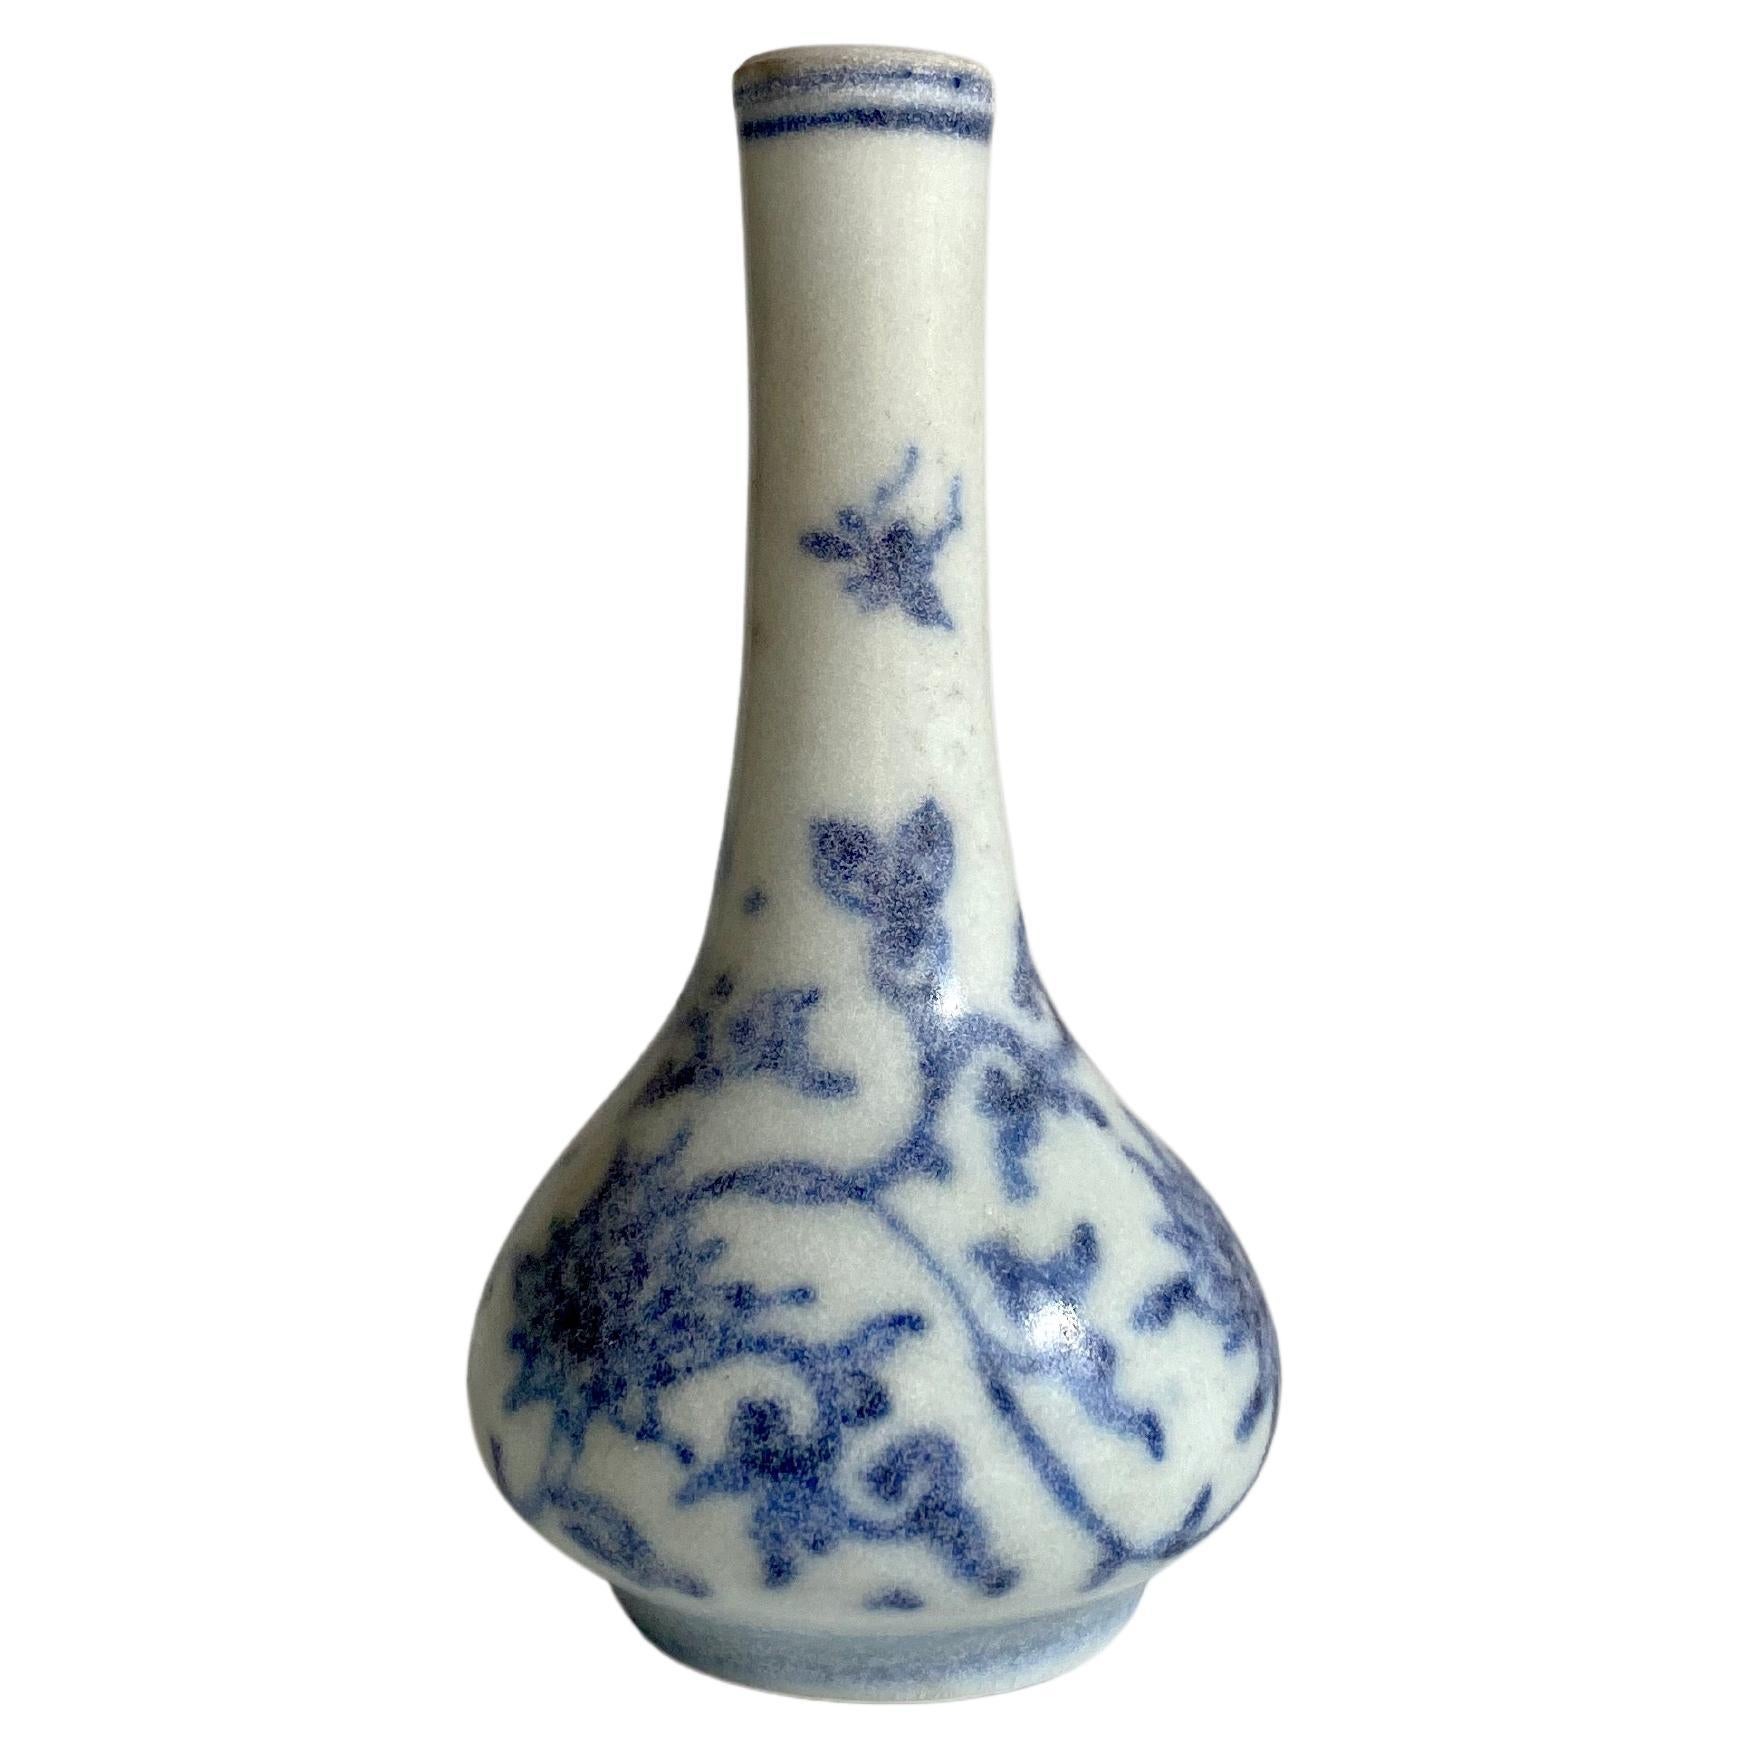 Miniatur-Vase aus The Hatcher Collection mit Blumengirlanden verziert